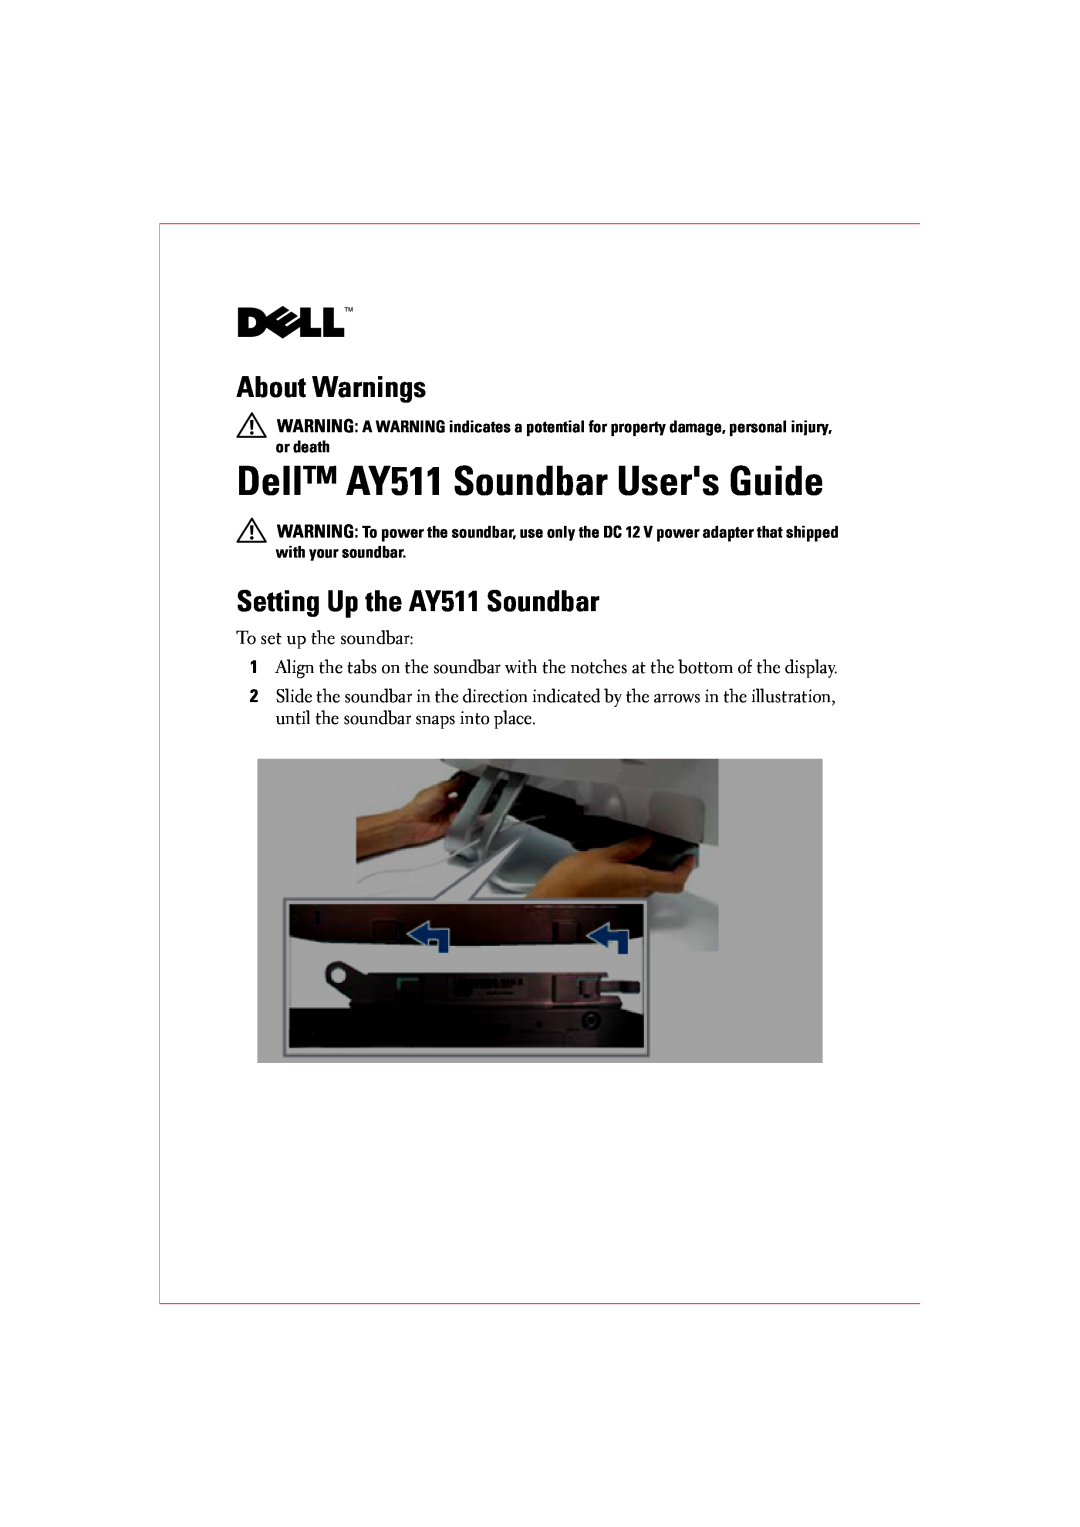 Dell manual About Warnings, Setting Up the AY511 Soundbar, Dell AY511 Soundbar Users Guide 